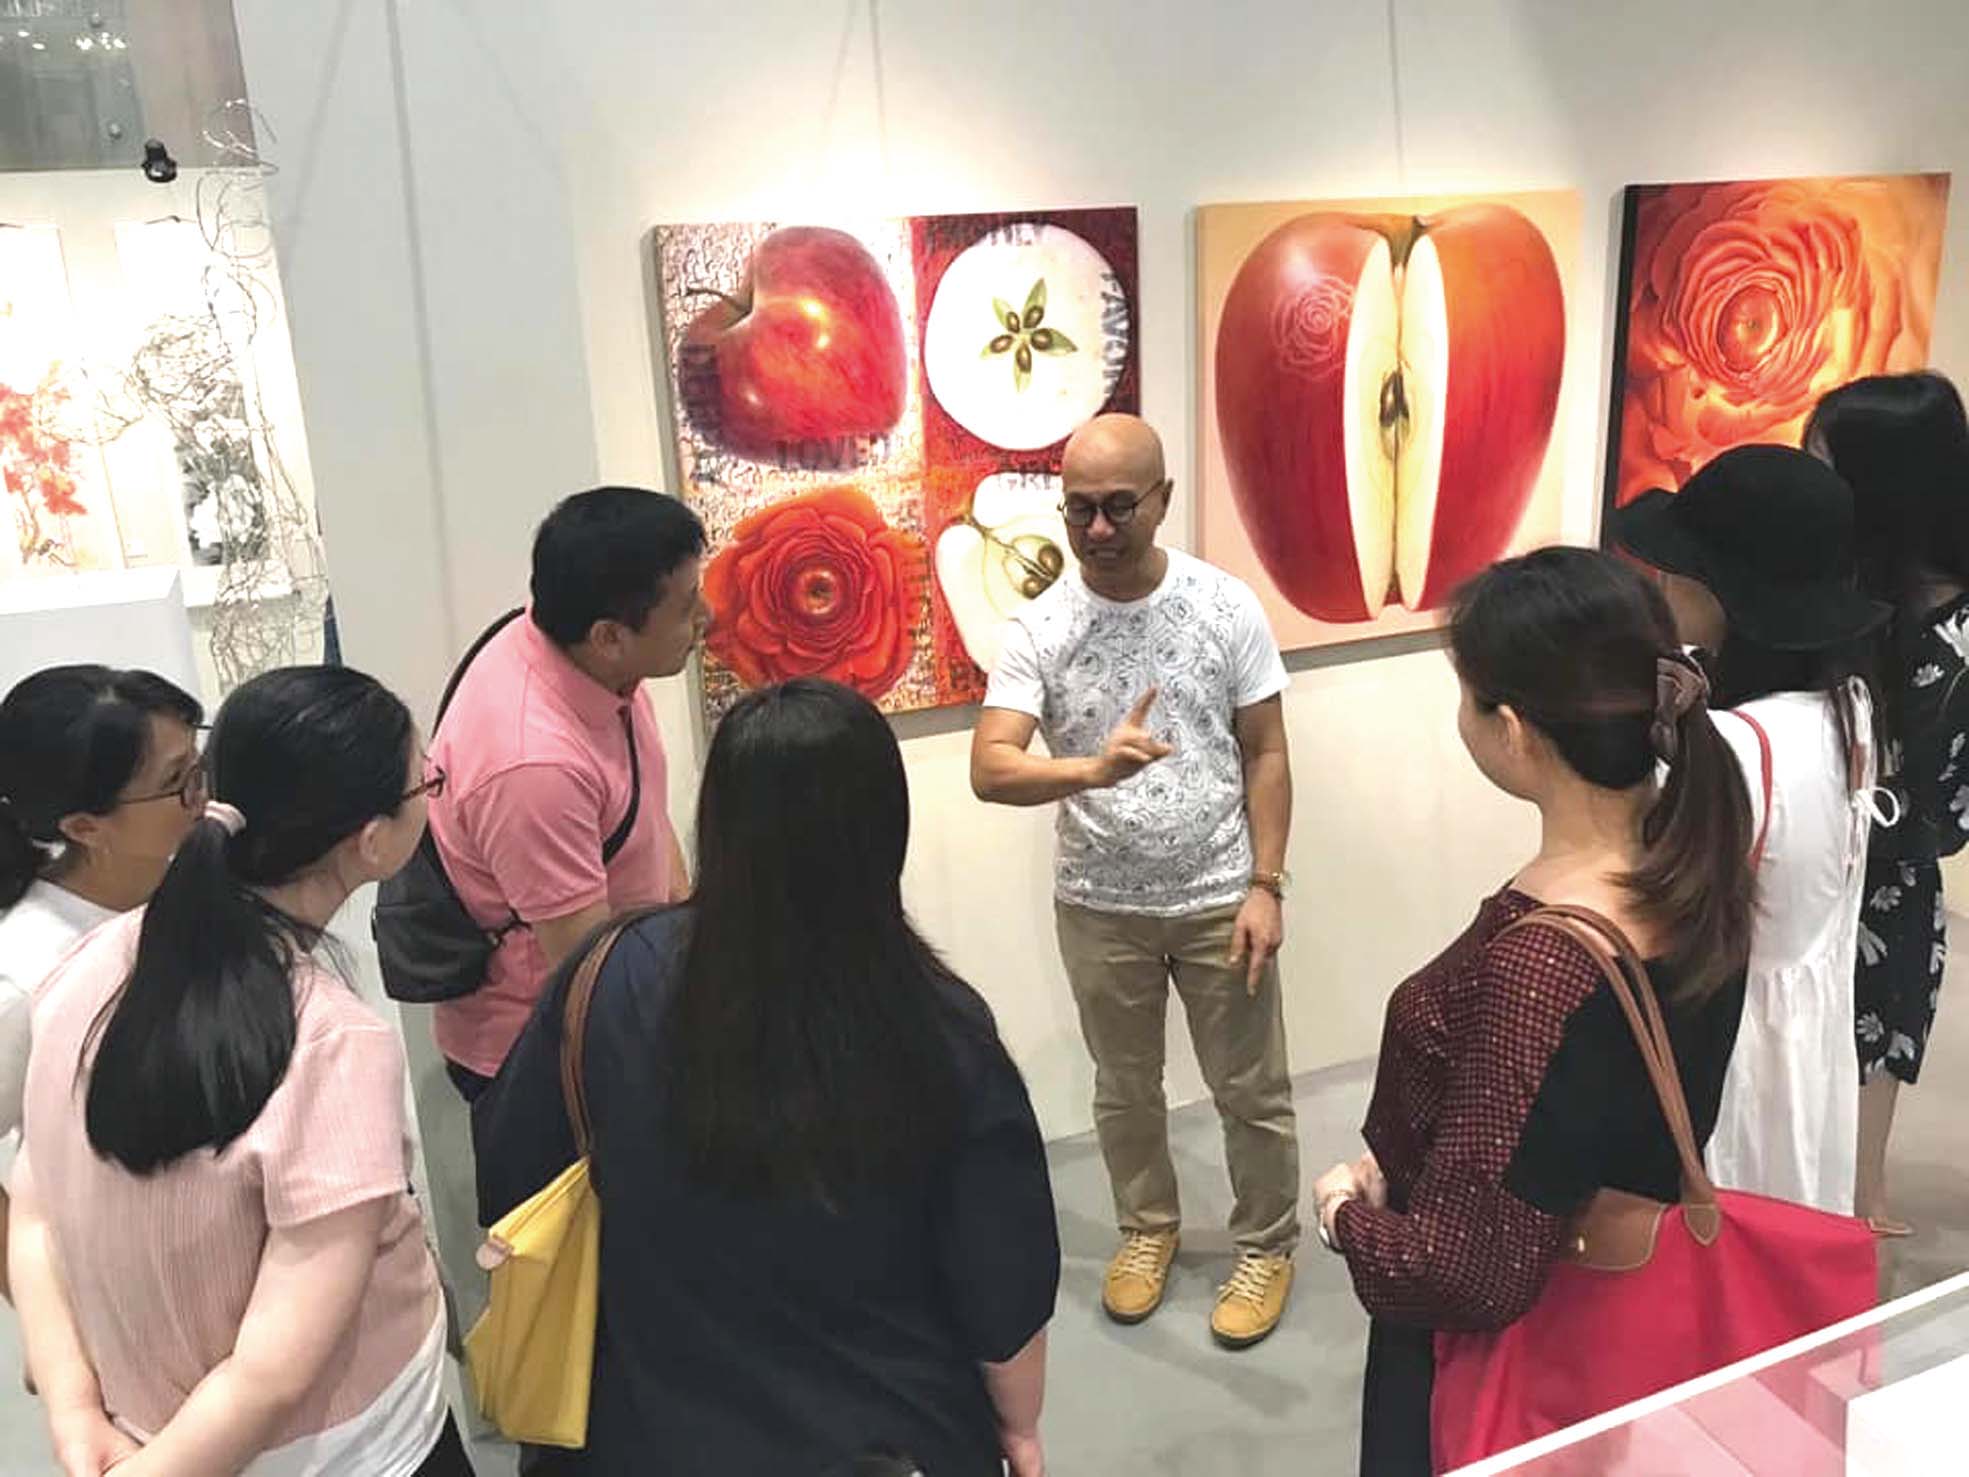 畫家在新加坡「祝福亞洲」藝術展上向會眾分享作品內容。